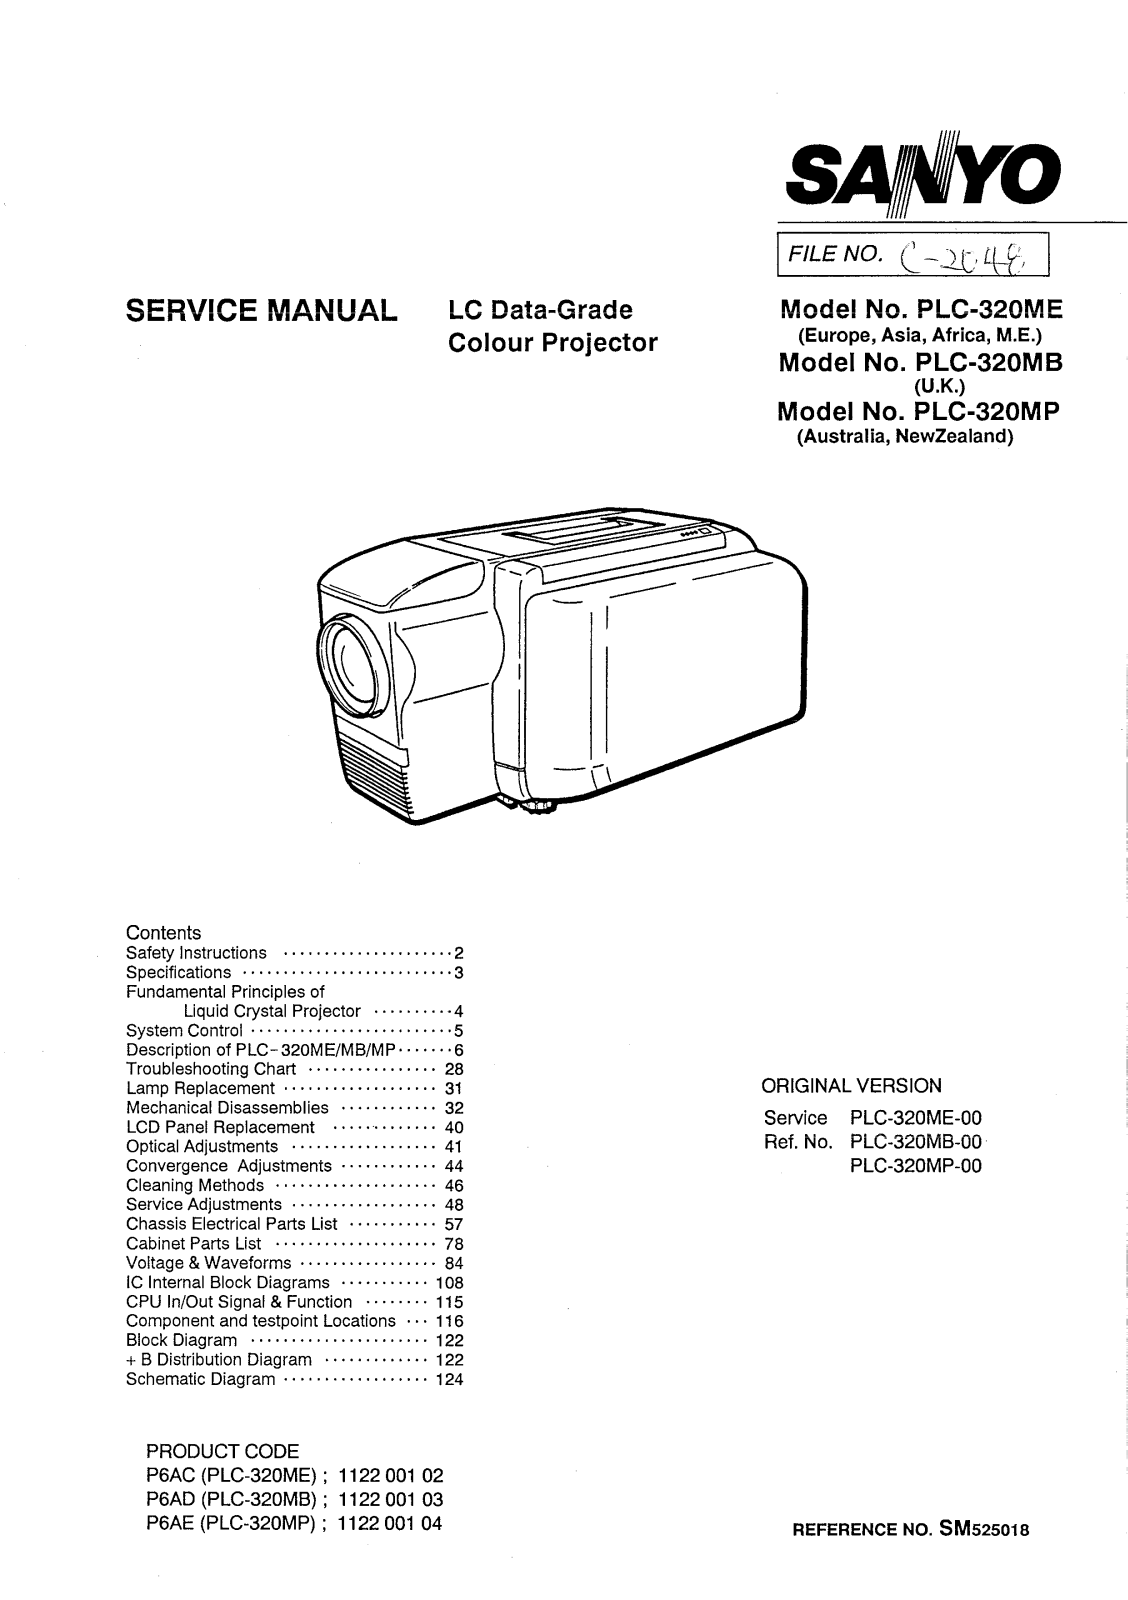 SANYO PLC-320ME-MB-MP Service Manual